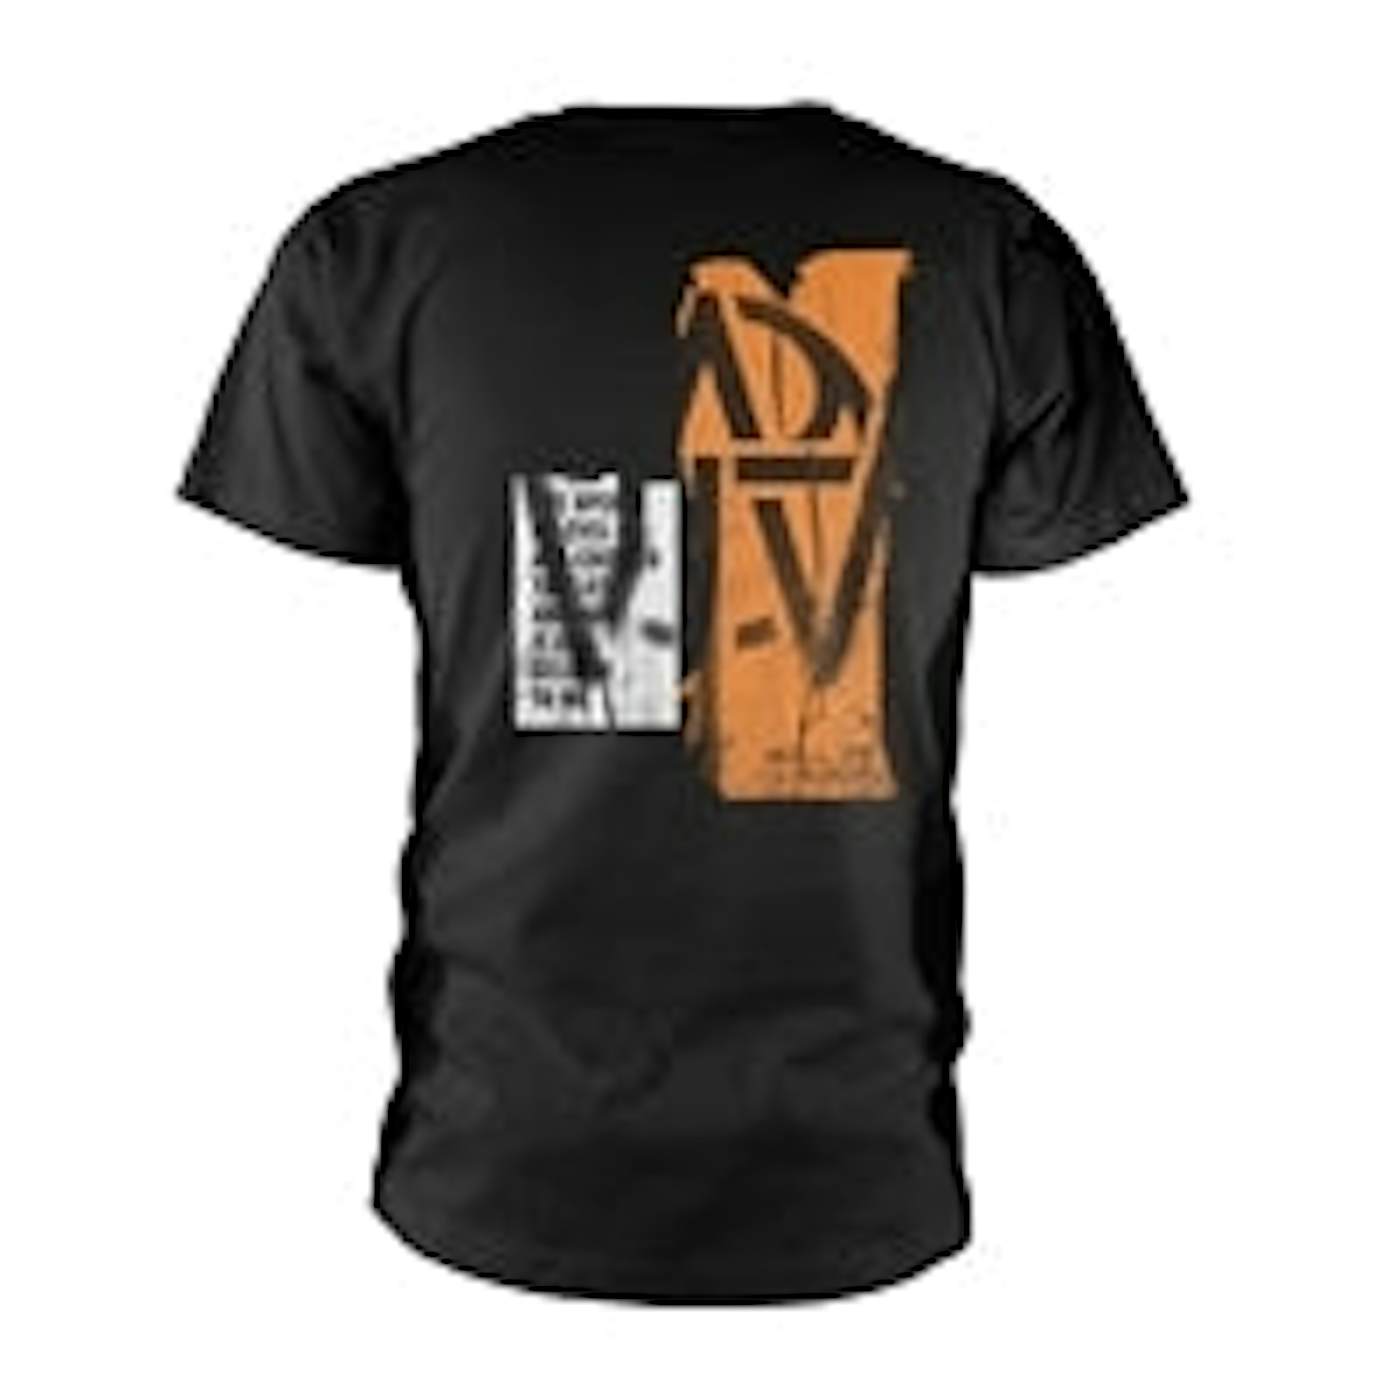  Muse T Shirt - Wotp Orange Stencil